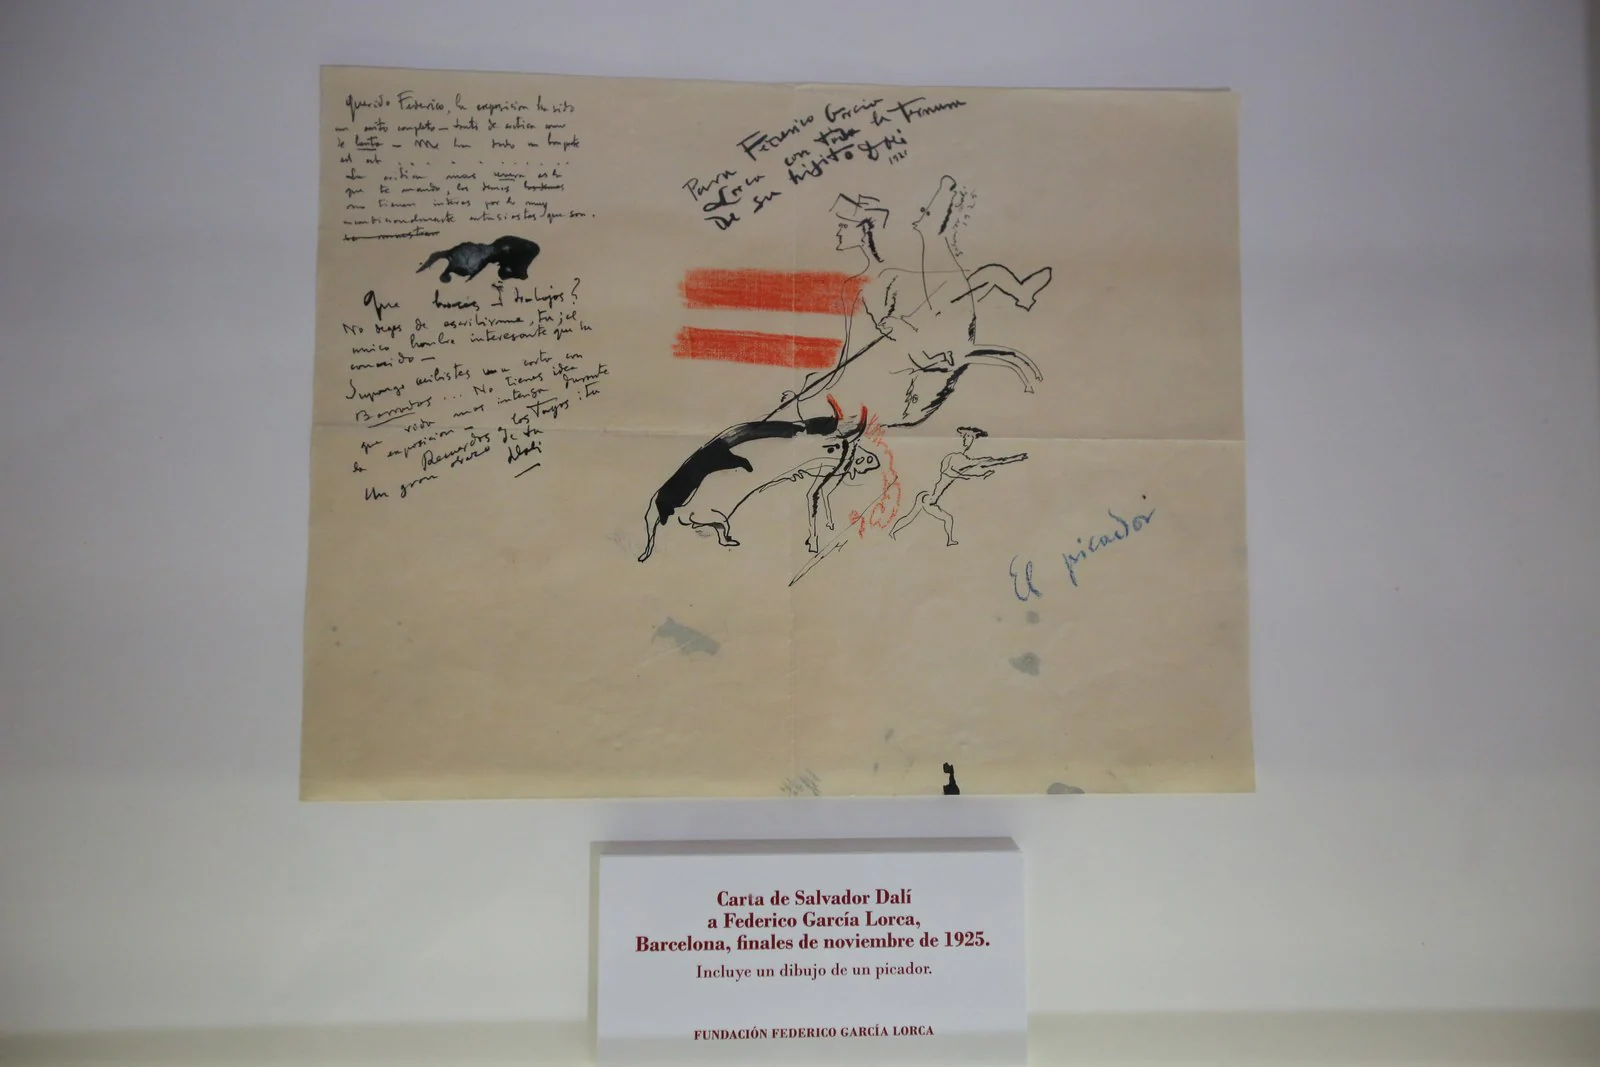 Carta de Salvador Dalí a Federico García Lorca enviada desde Barcelona a finales de noviembre de 1925. Incluye un dibujo de un picador. Fundación Lorca.